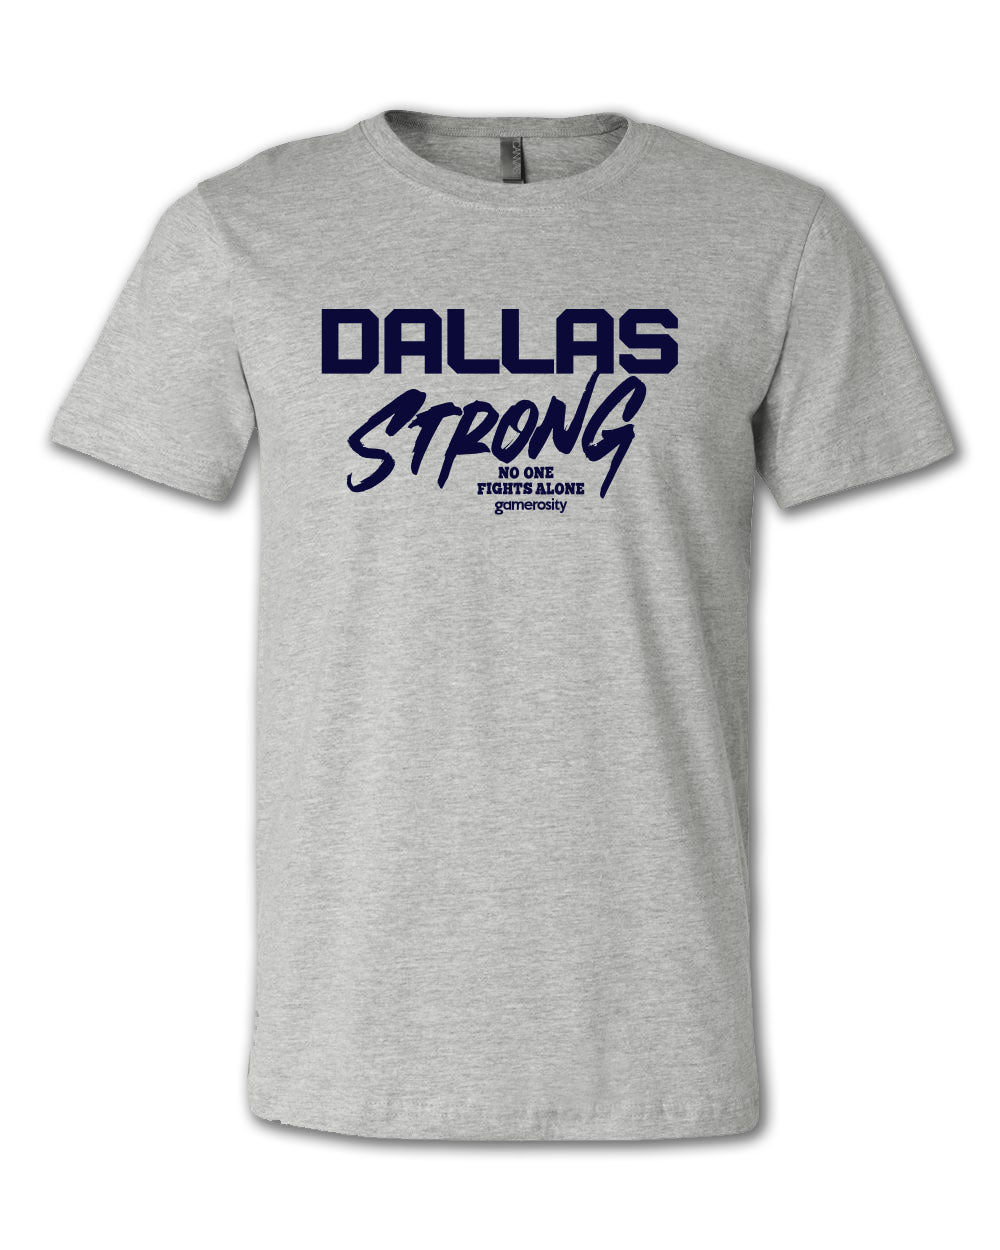 Dallas Strong